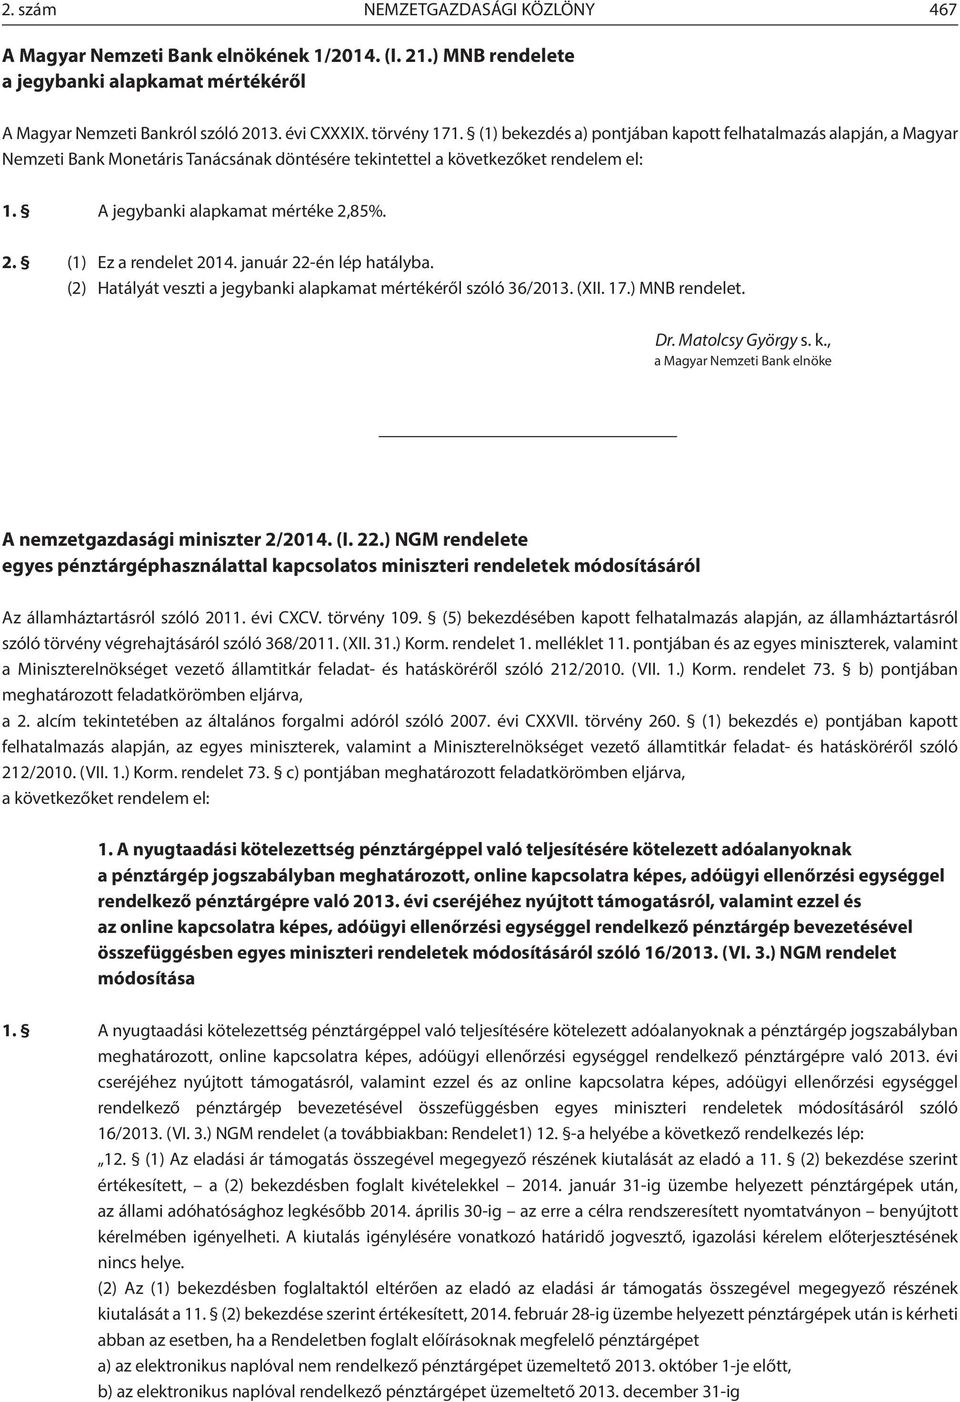 85%. 2. (1) Ez a rendelet 2014. január 22-én lép hatályba. (2) Hatályát veszti a jegybanki alapkamat mértékéről szóló 36/2013. (XII. 17.) MNB rendelet. Dr. Matolcsy György s. k.